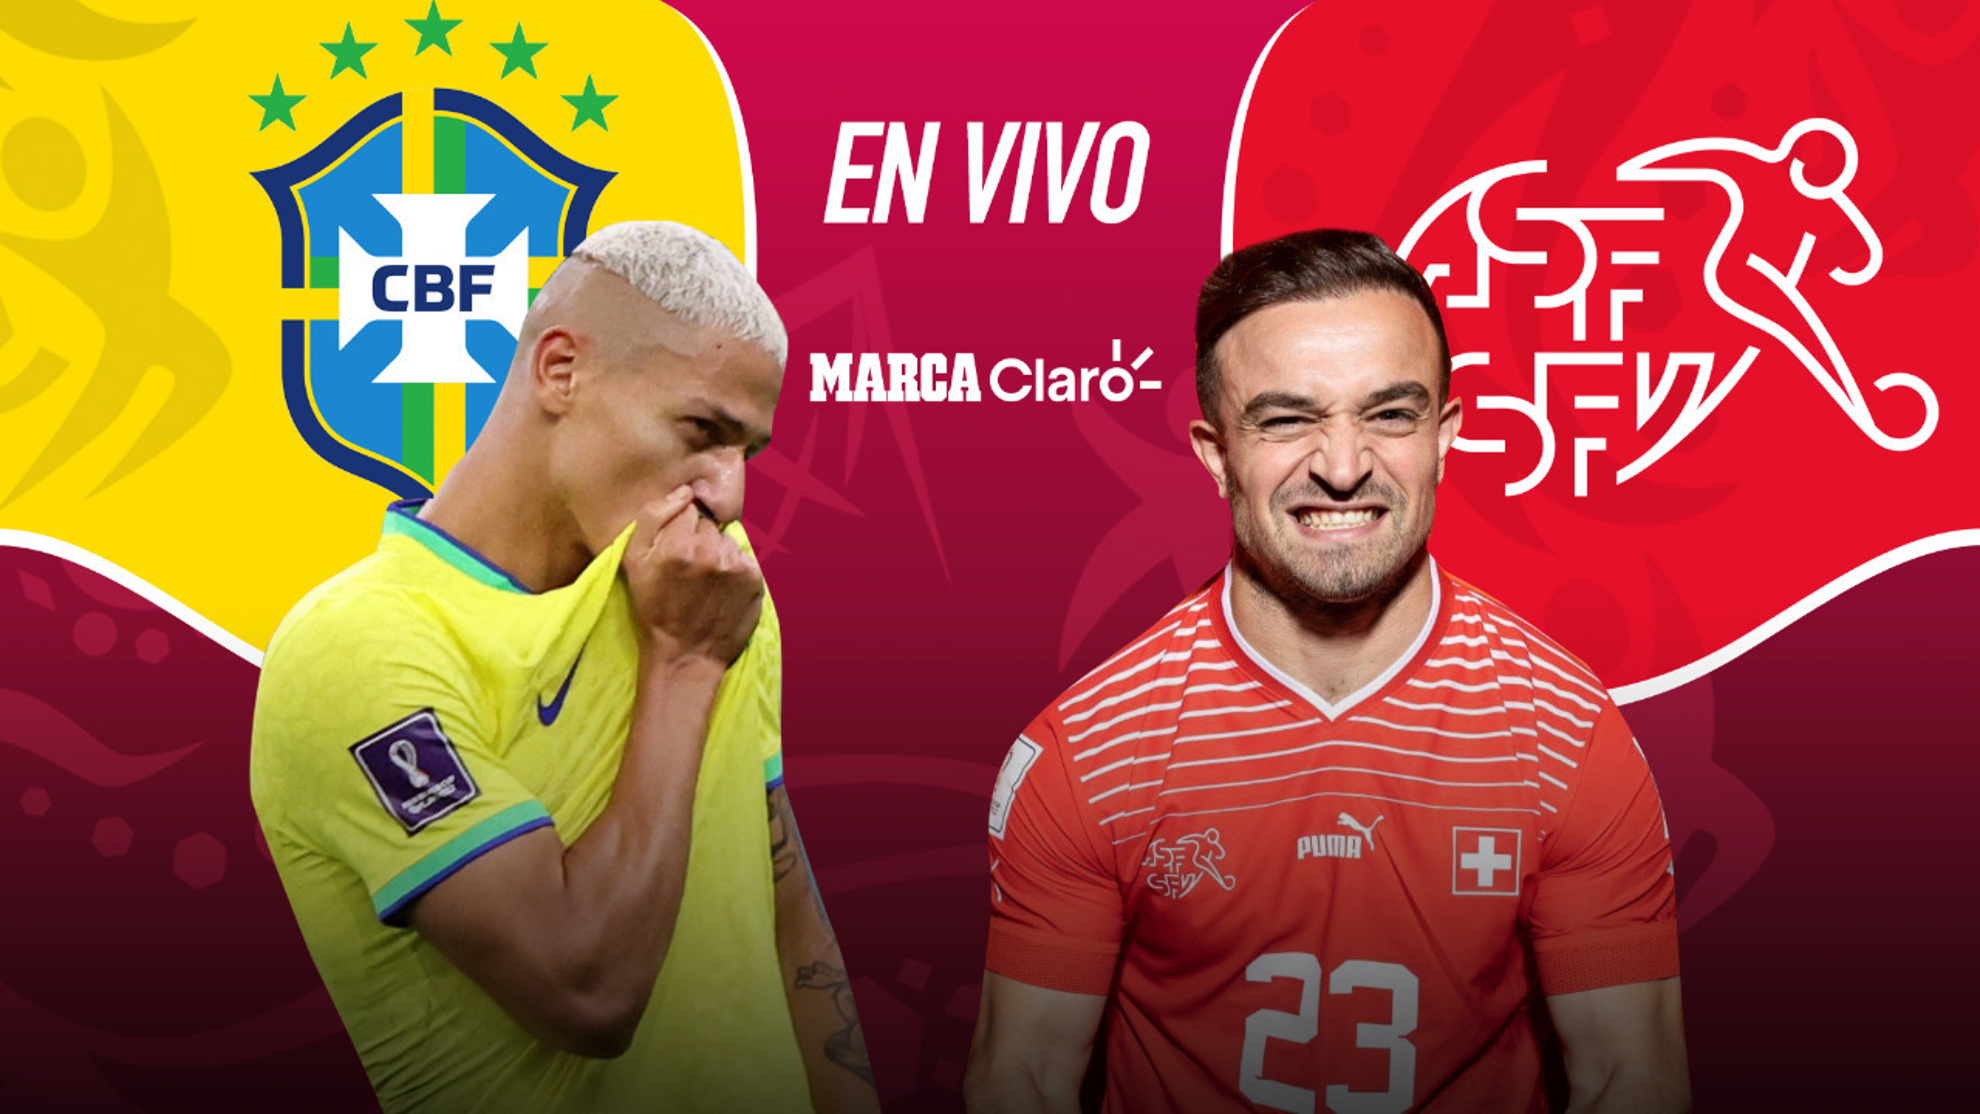 Saltar Demostrar Pionero Partidos de Hoy: Brasil vs Suiza, resumen y el gol del partido por la fecha  2 del Grupo G de Qatar 2022 | MARCA Claro Colombia